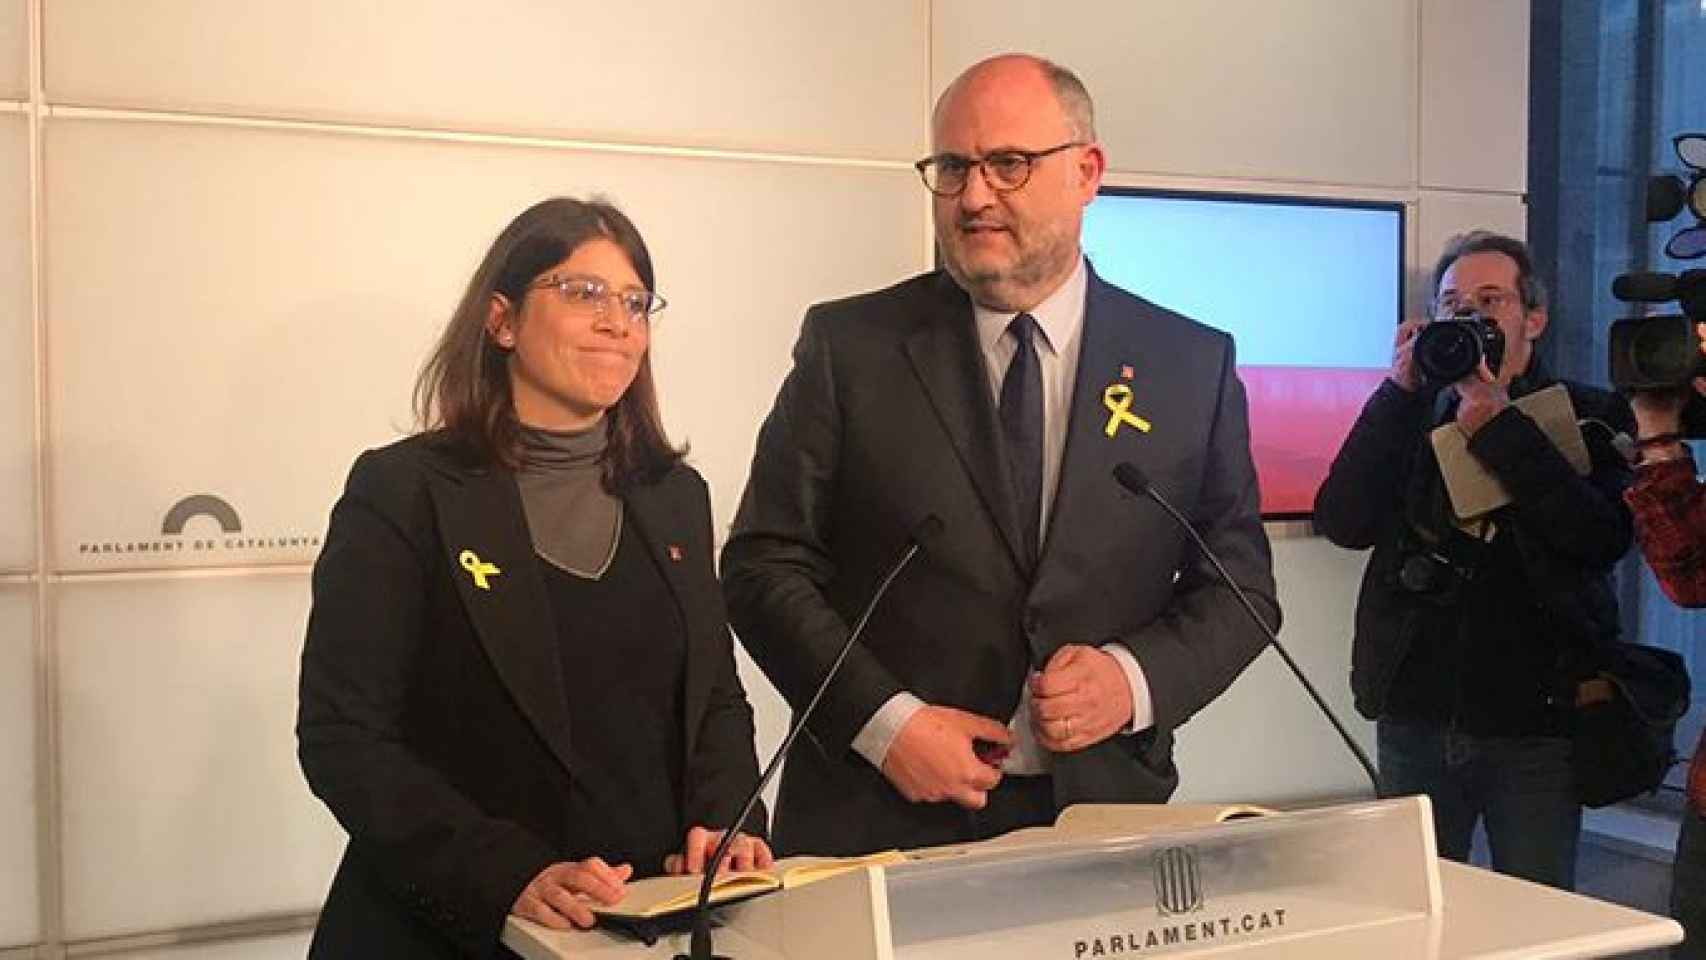 Los diputados de JxCAT Eduard Pujol y Gemma Geis valoran la suspensión de la investidura de Carles Puigdemont, en una imagen reciente/ CG